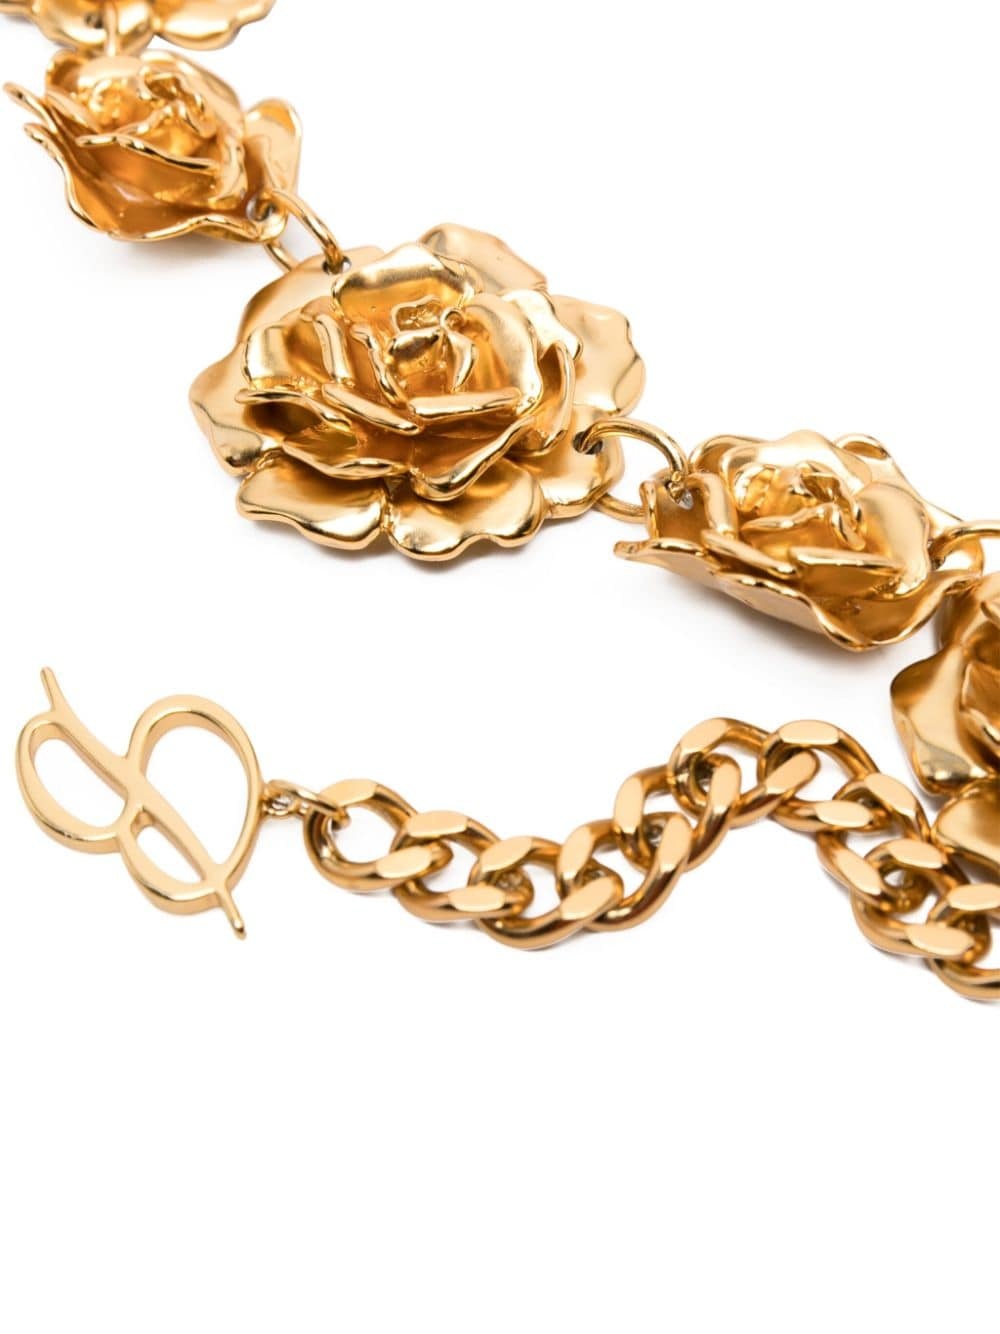 floral-motif chain belt - 2